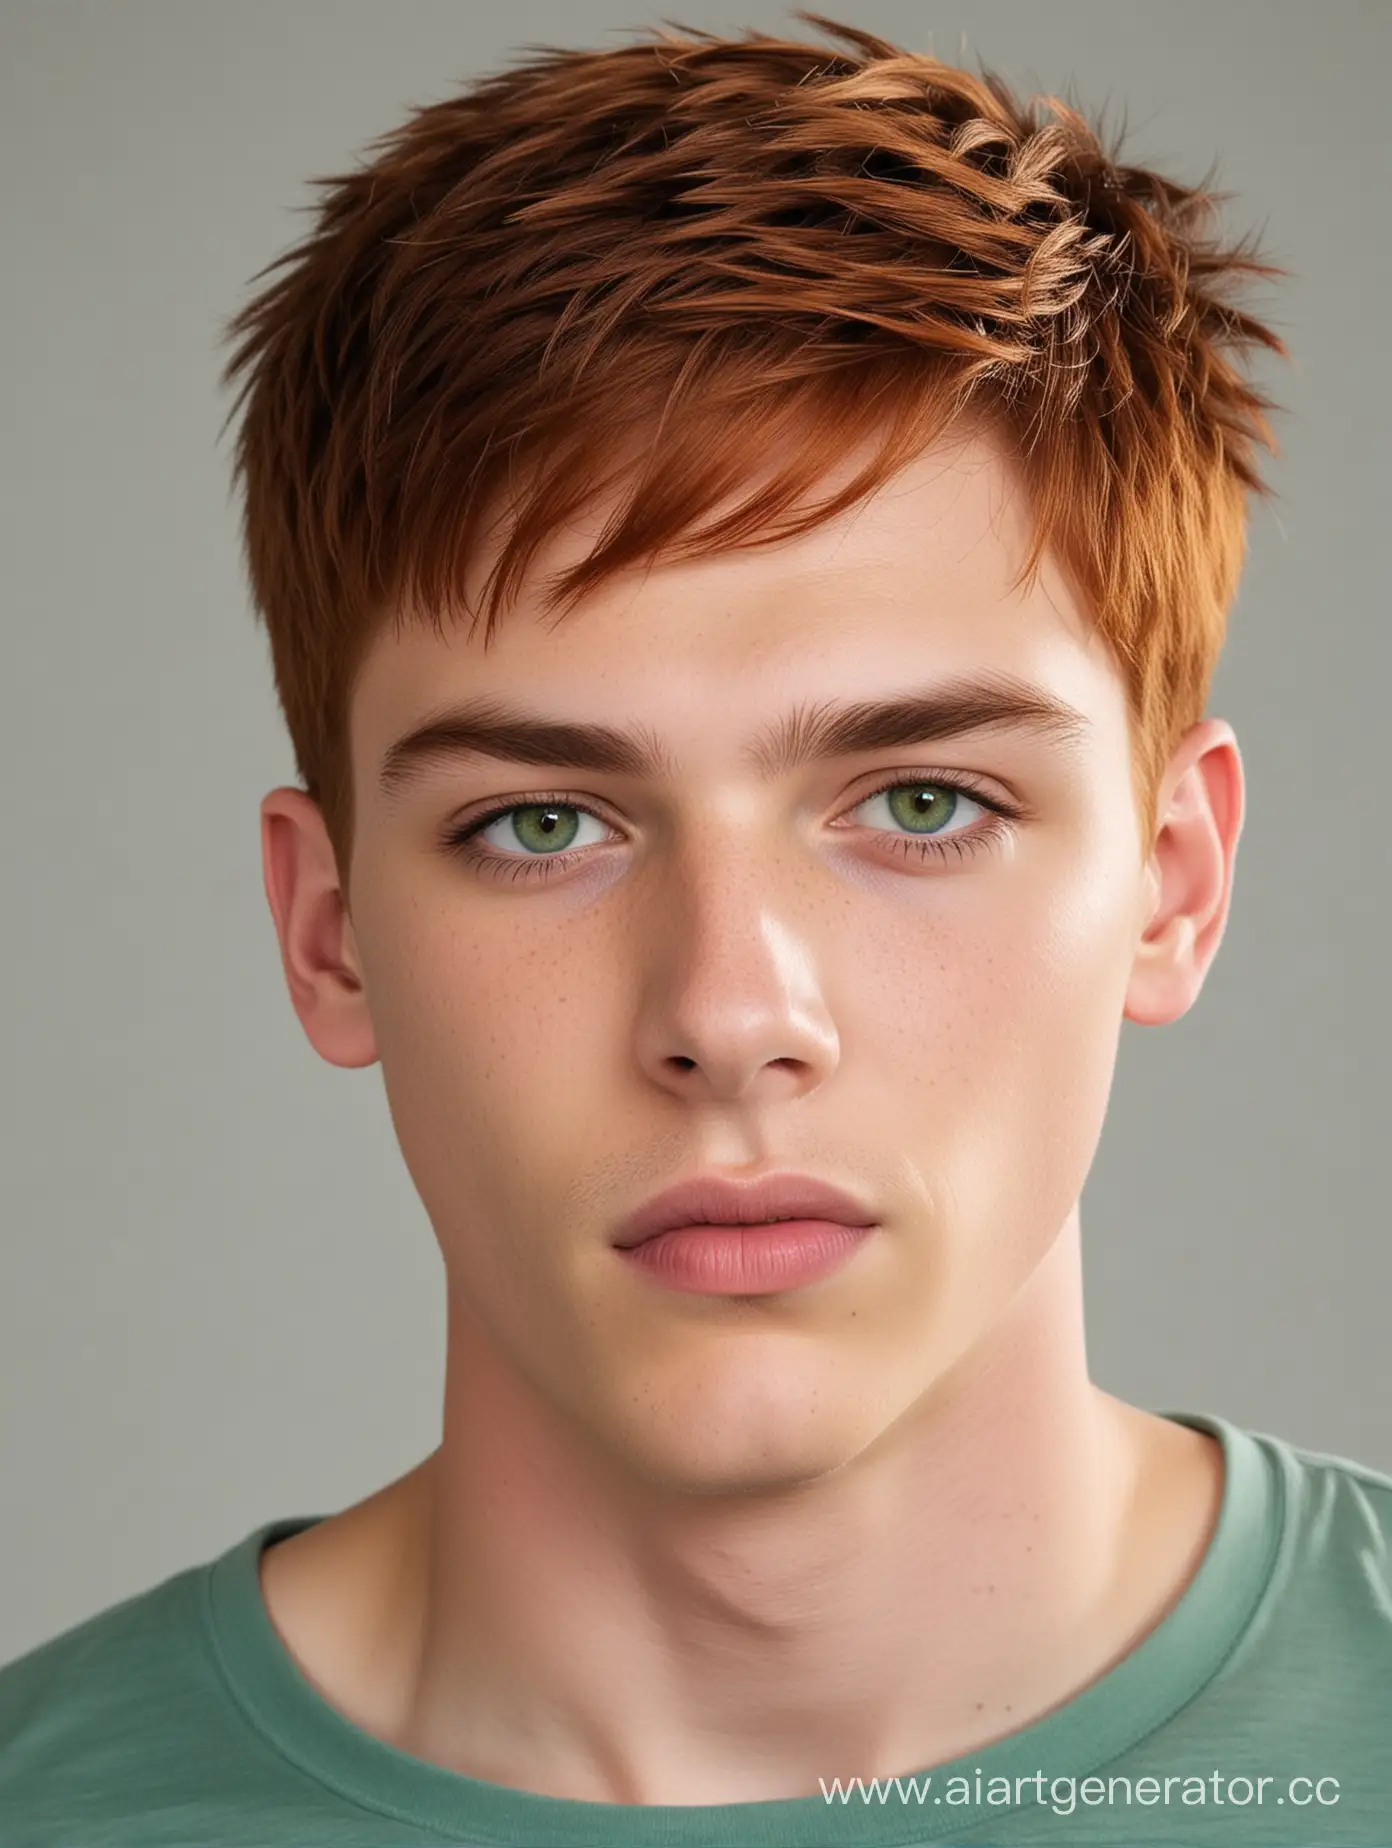 парень, 18 лет, стройный, с густыми короткими рыжими волосами, зелёные глаза, пухлые губы